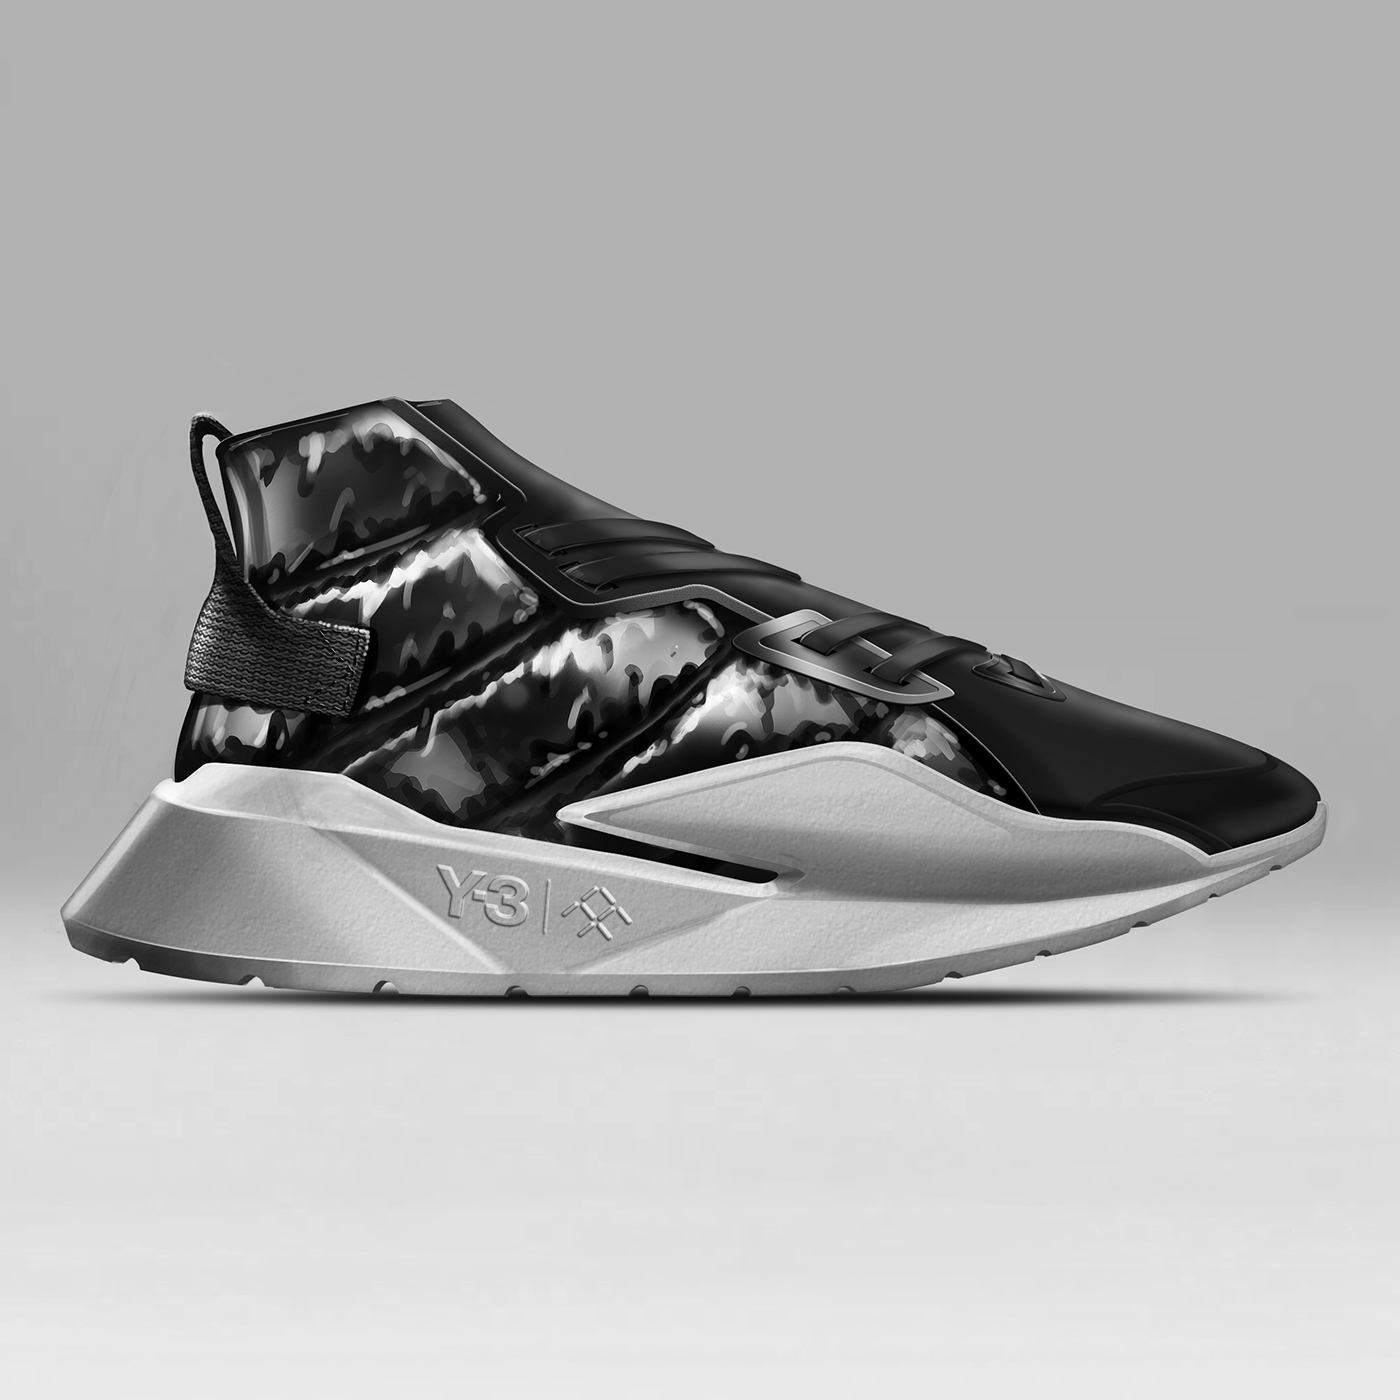 footwear design sneaker adidas conceptkicks Nike sketching shoes design Renderings